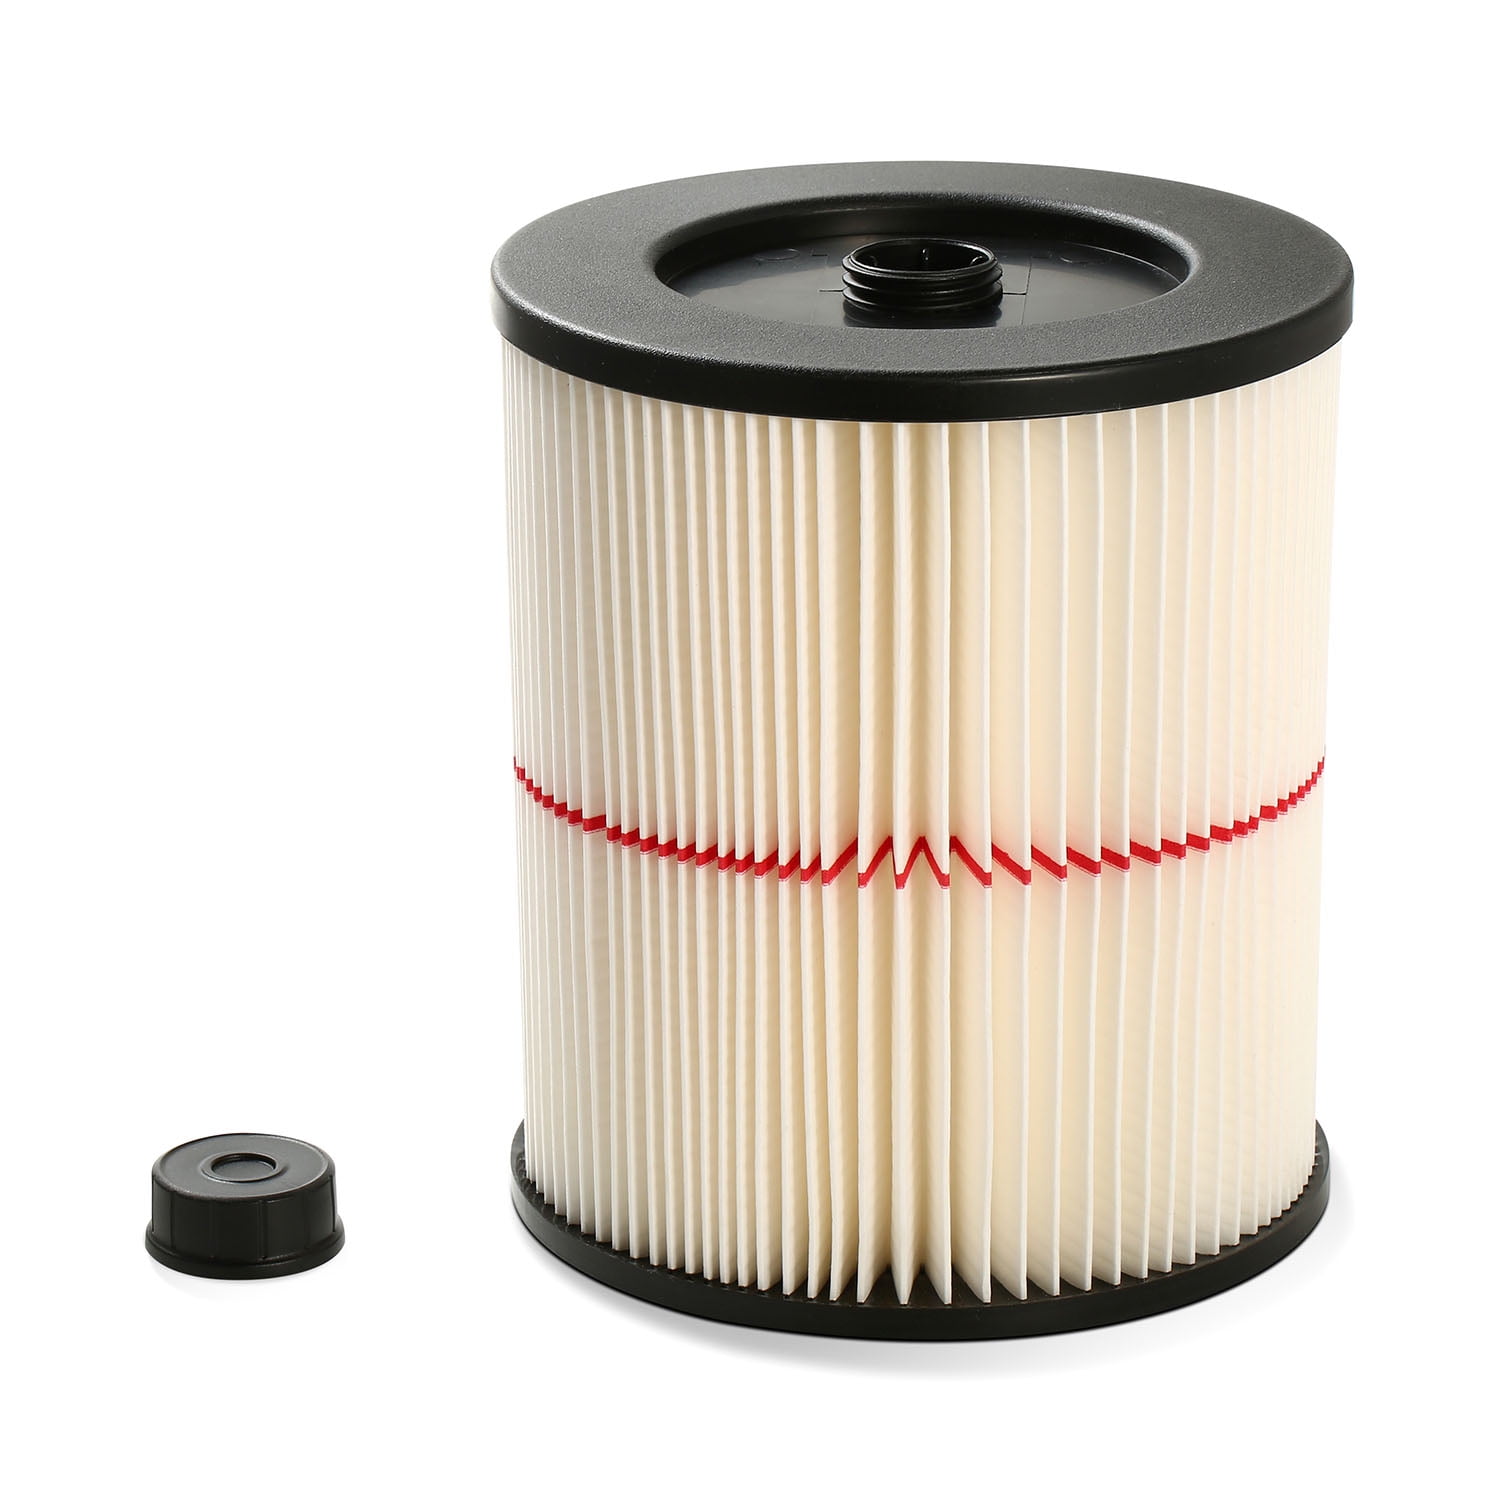 Vacuum Filter Kits cap 8.1" For Shop Vac Craftsman 17816 9-17816 9-17741 9-17742 